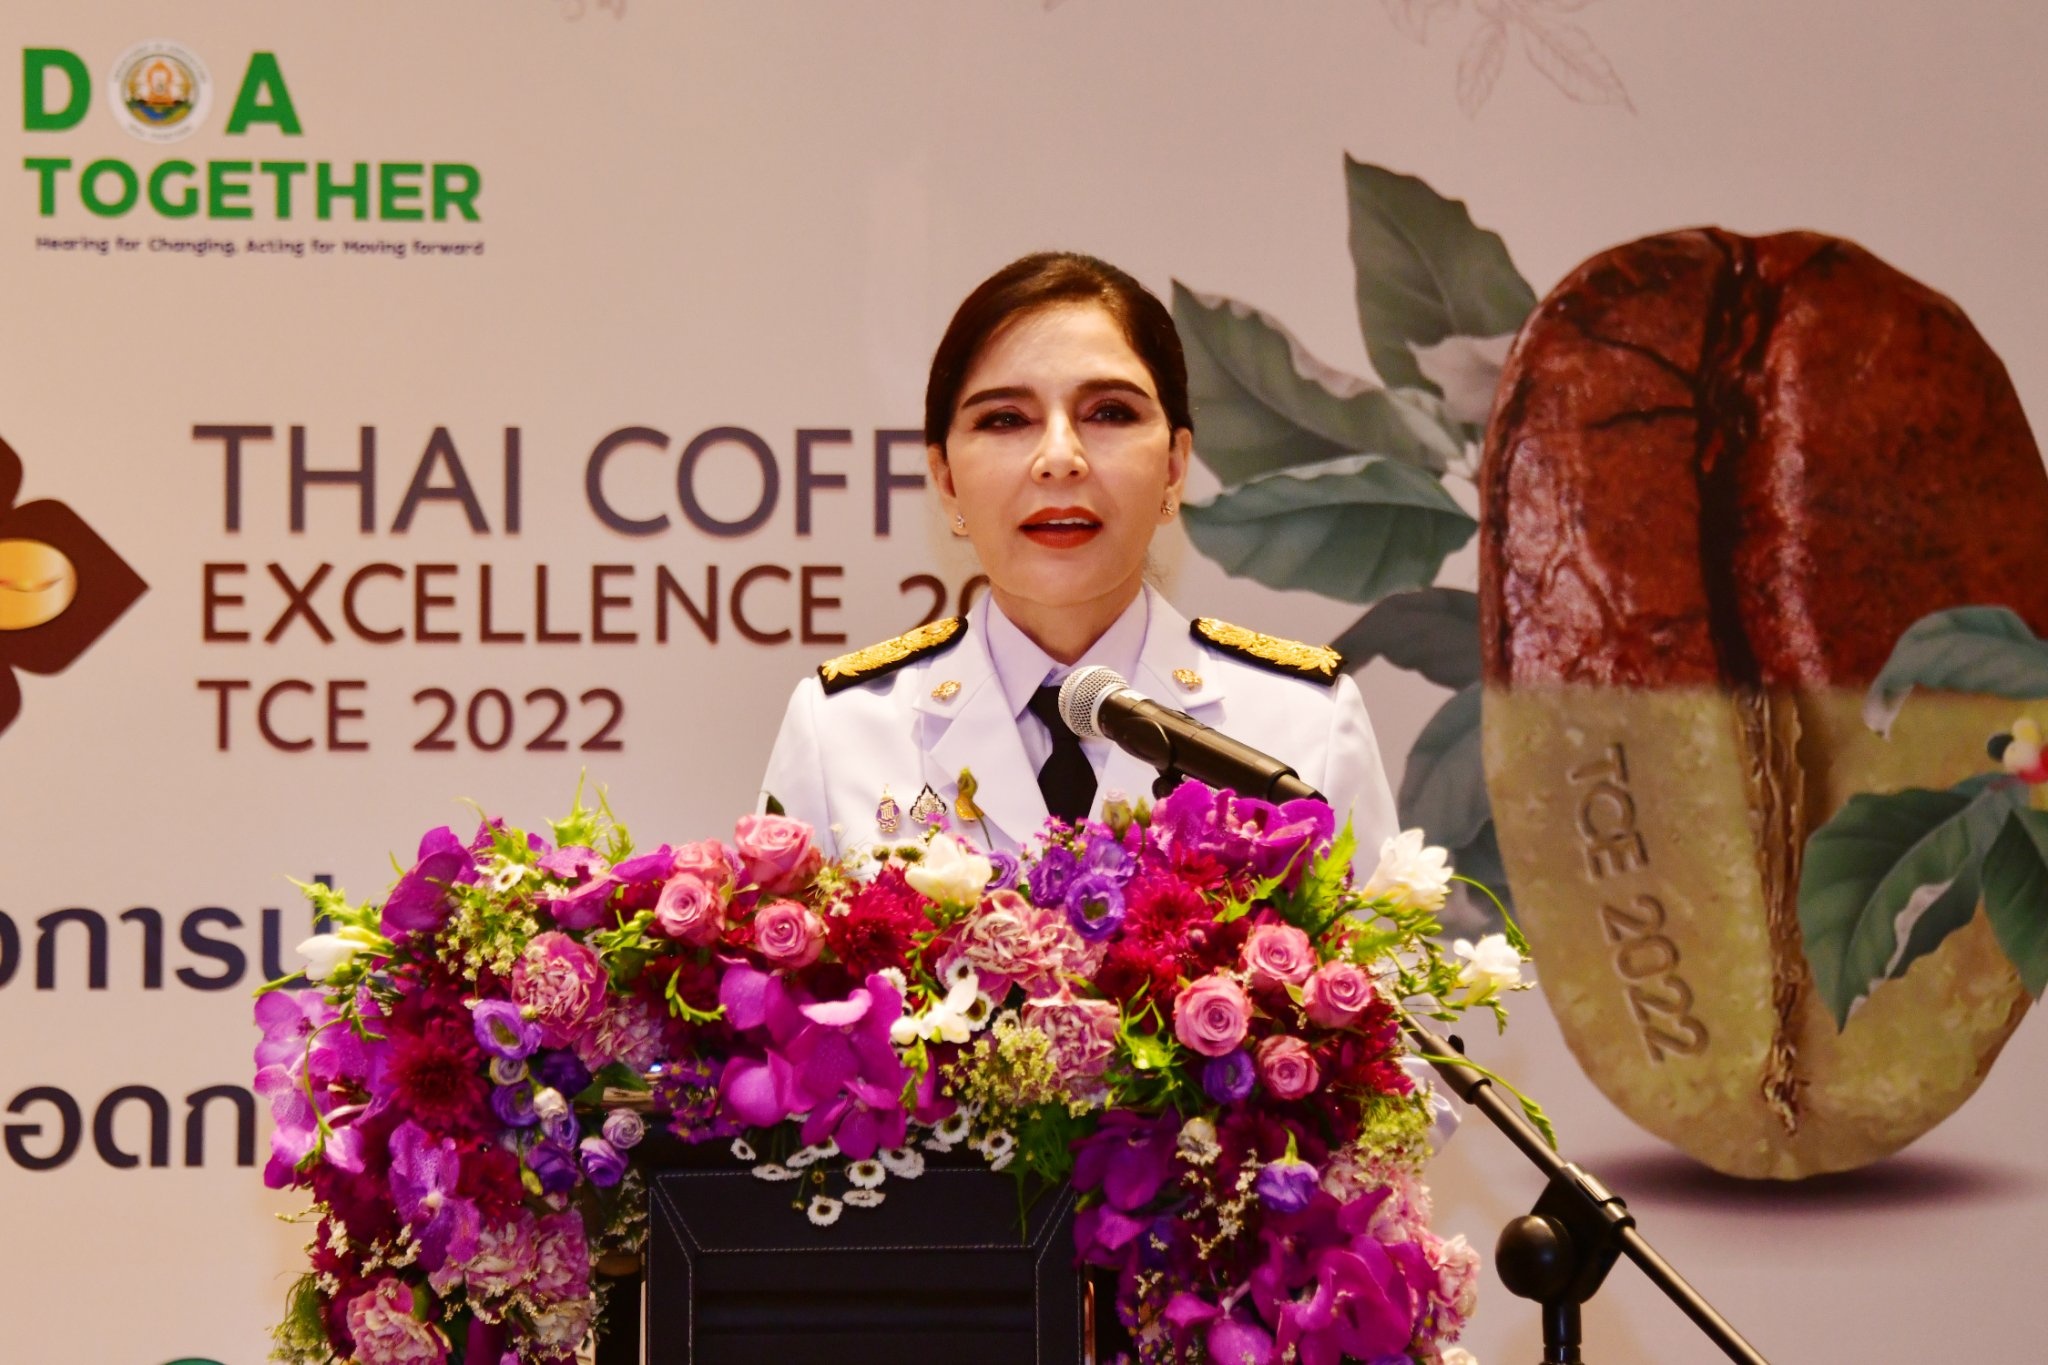 พิธีรับถ้วยรางวัลพระราชทานการประกาศผลรางวัลชนะเลิศการประกวดสุดยอดกาเเฟไทย ปี 2565 (Thai Coffe Excellence 2022) ... พารามิเตอร์รูปภาพ 1